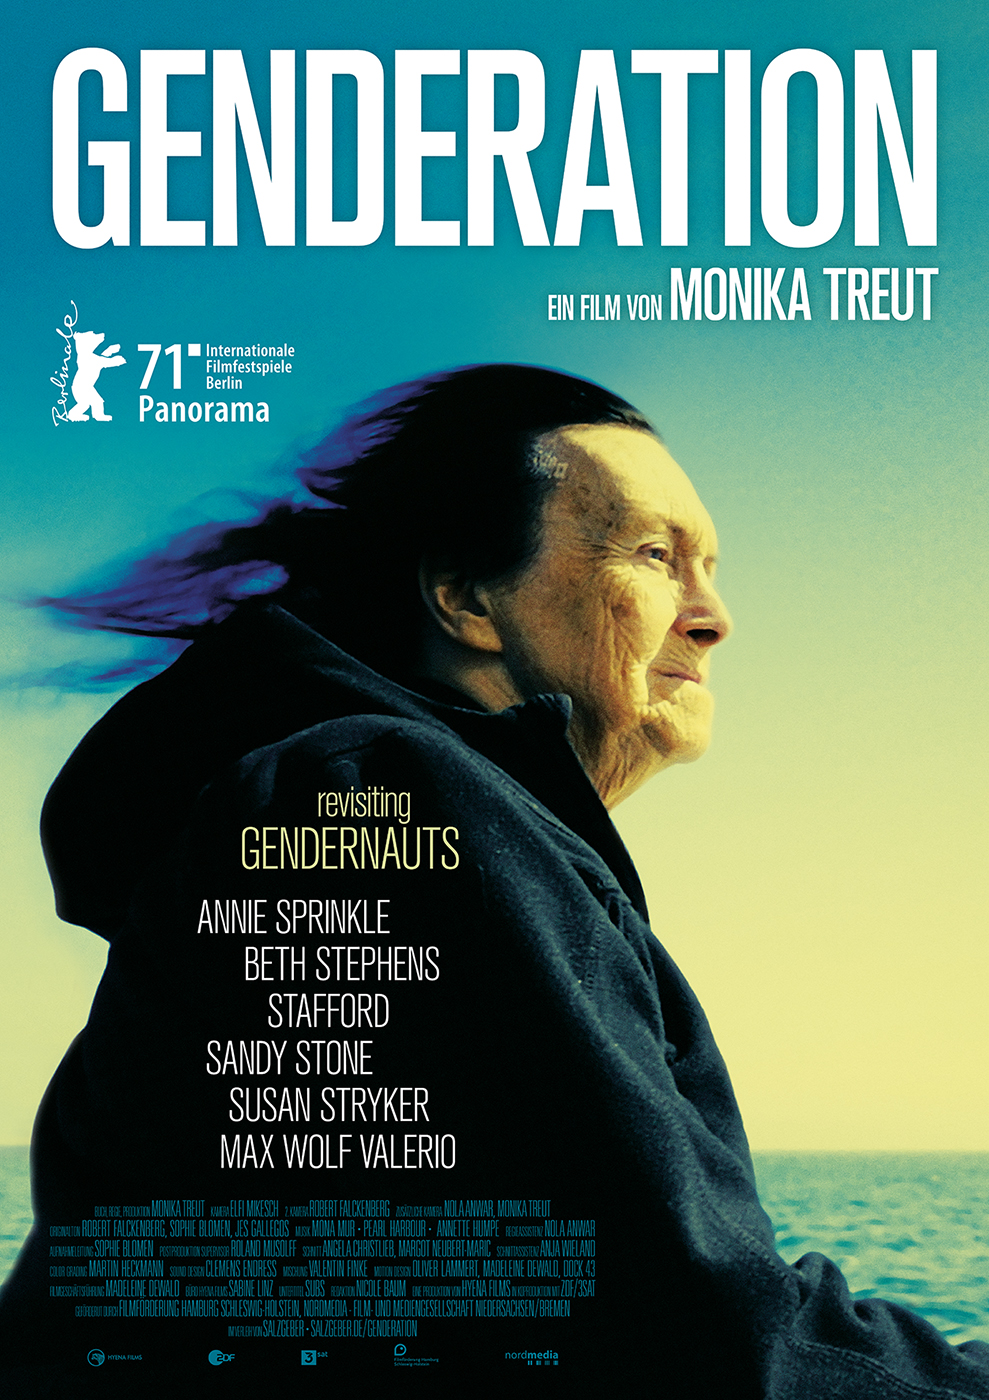 Film-Double-Feature mit Regisseurin Monika Treut: „Gendernauts“ und „Genderation“ am 27. und 28. Juni 2022 im Kino 8 1/2